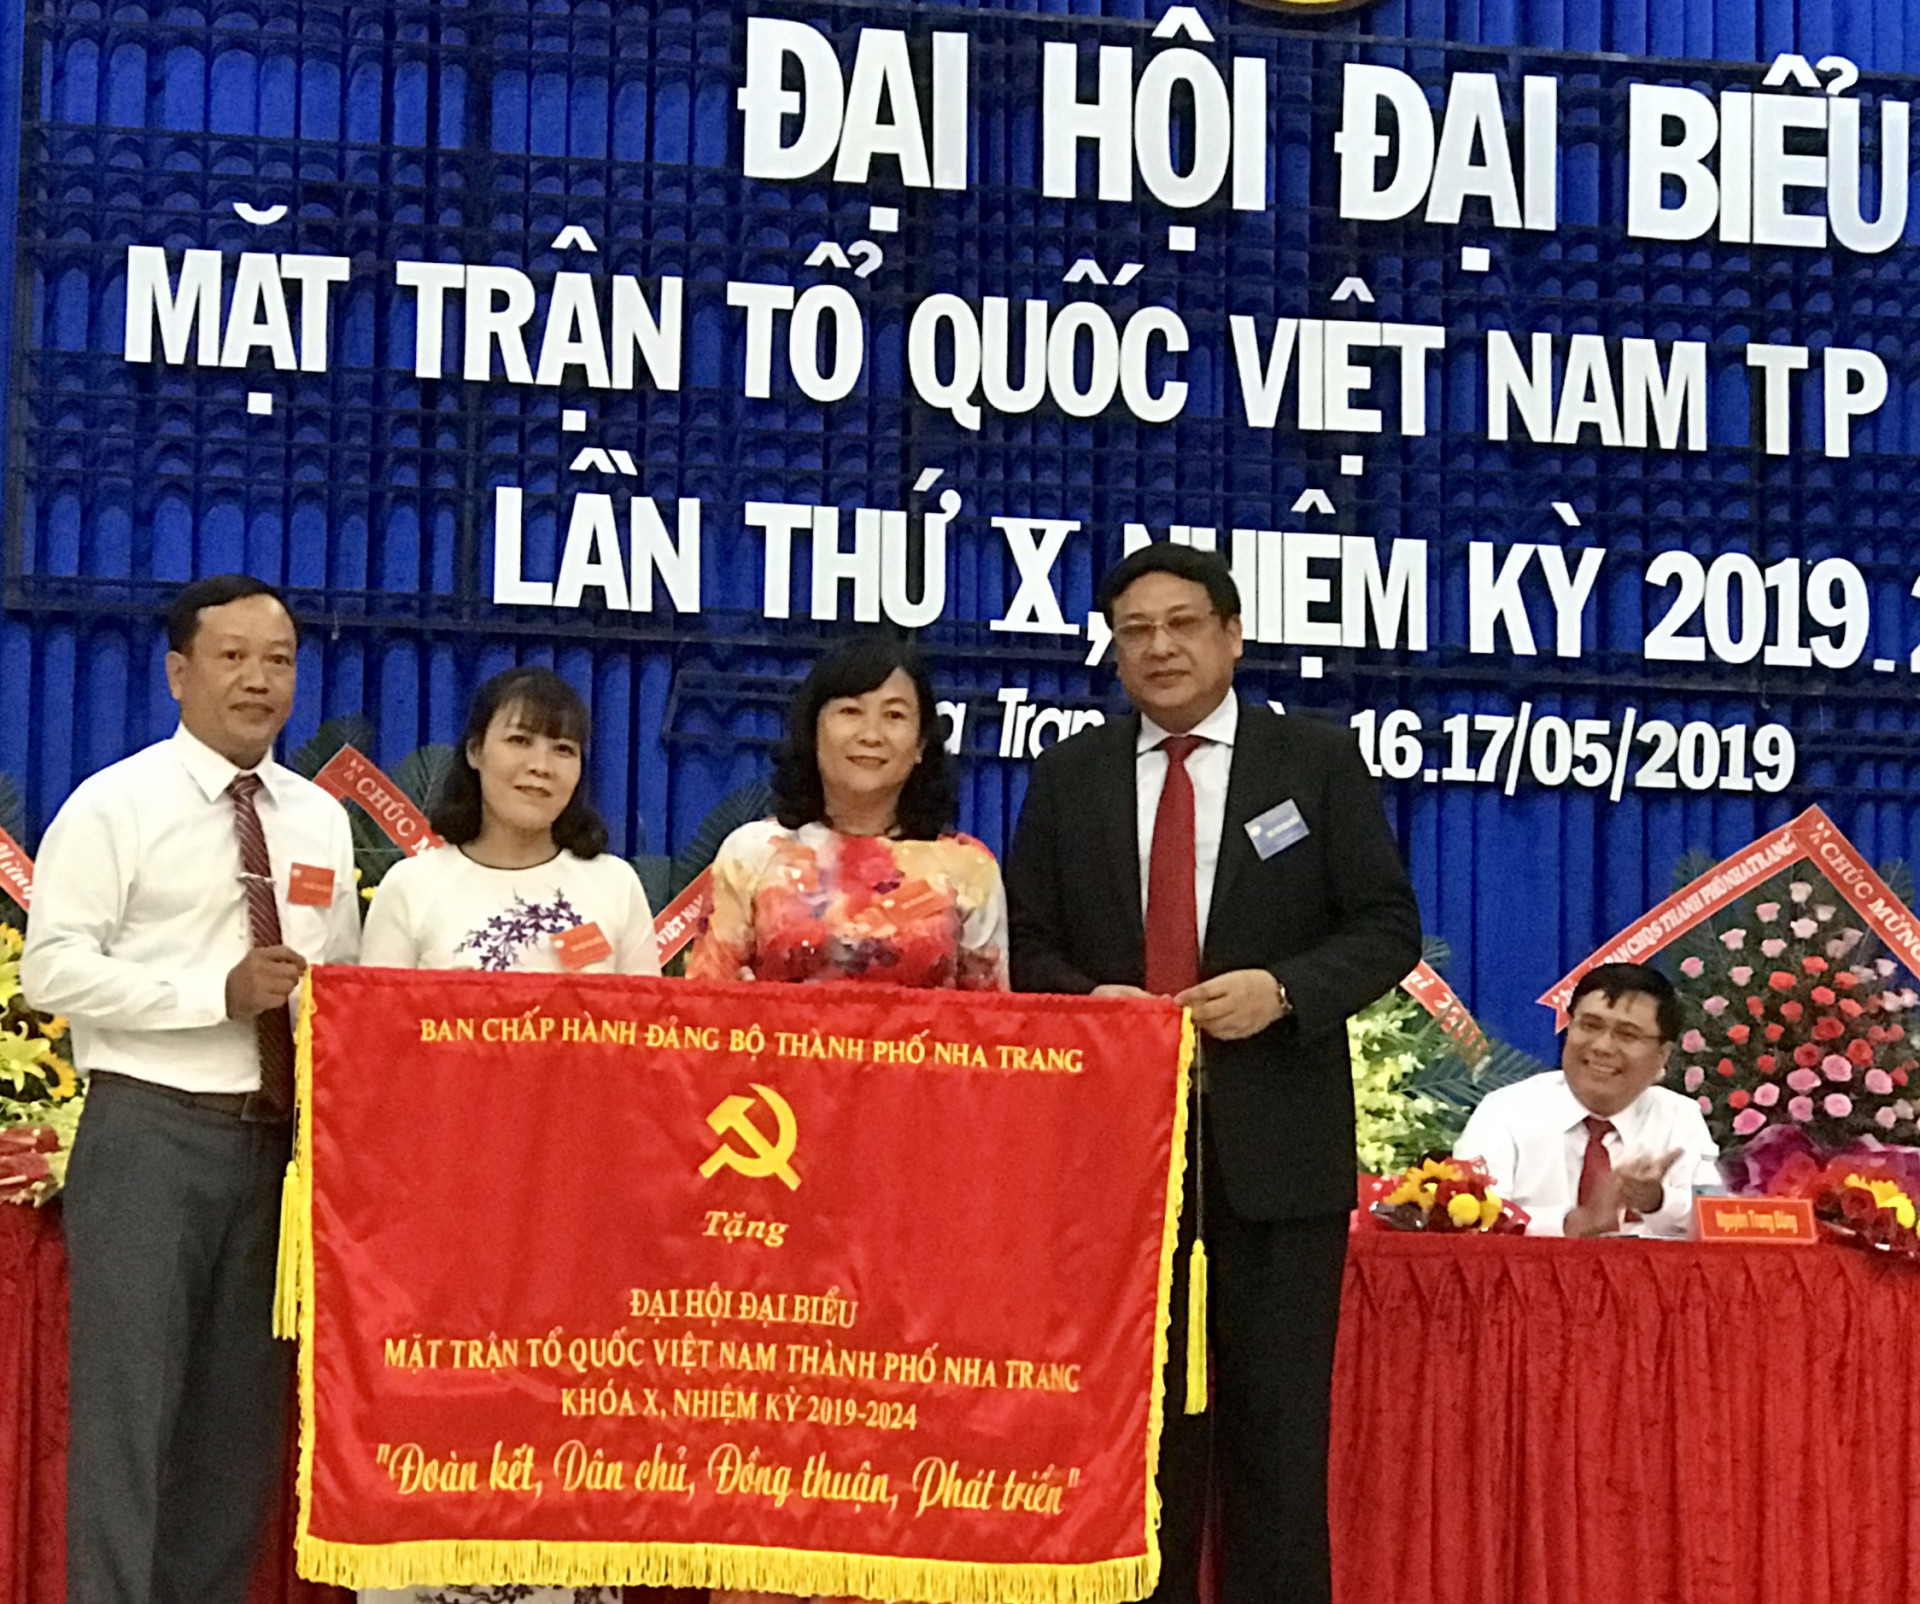 Lãnh đạo Thành ủy Nha Trang tặng bức trướng cho đại hội